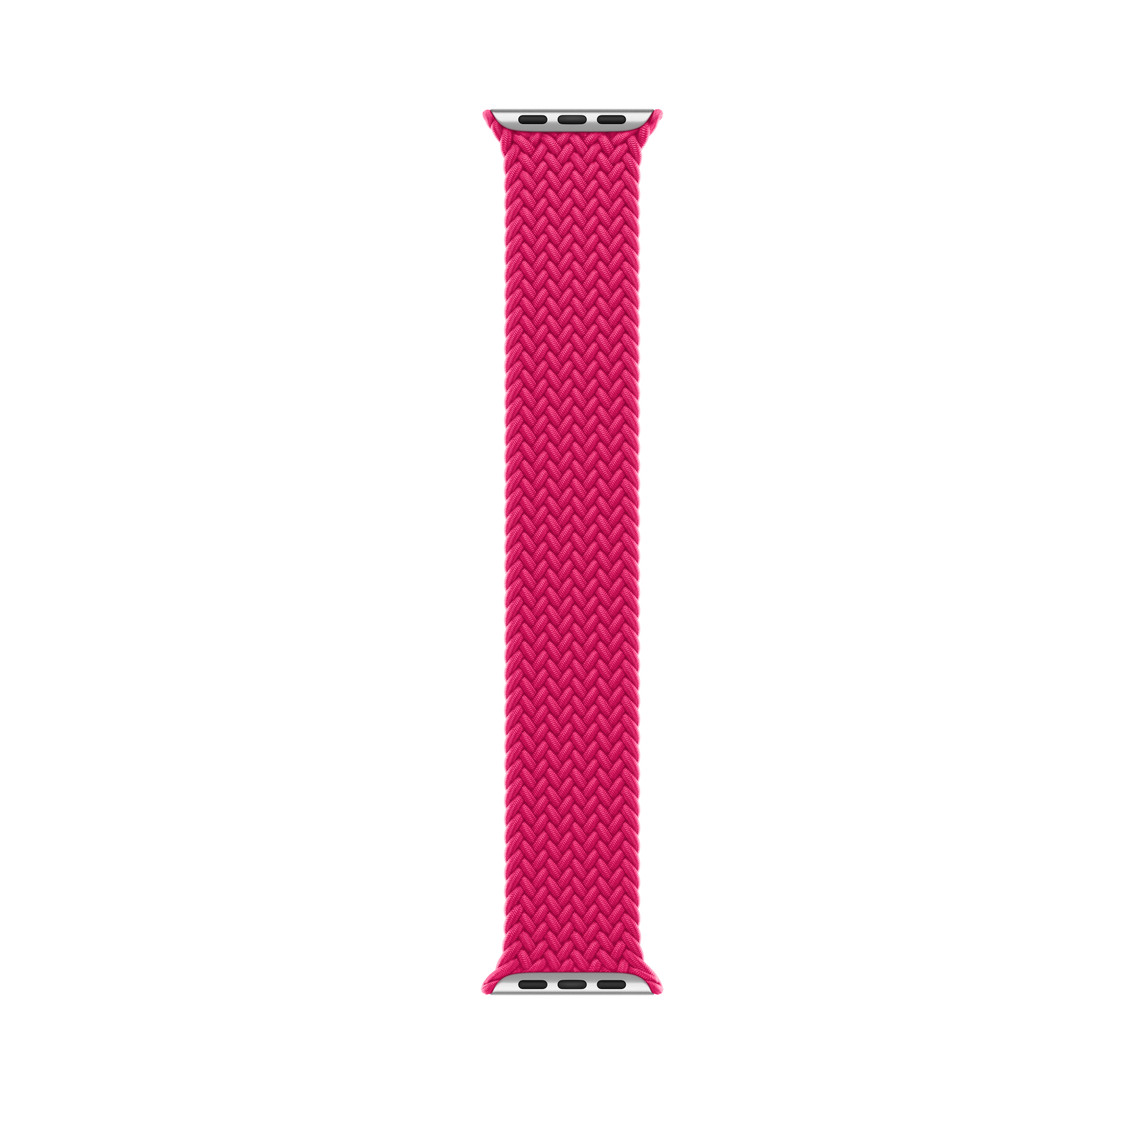 Flettet Solo Loop-rem i farven hindbær, vævede polyester- og silikonetråde uden lås eller spænde